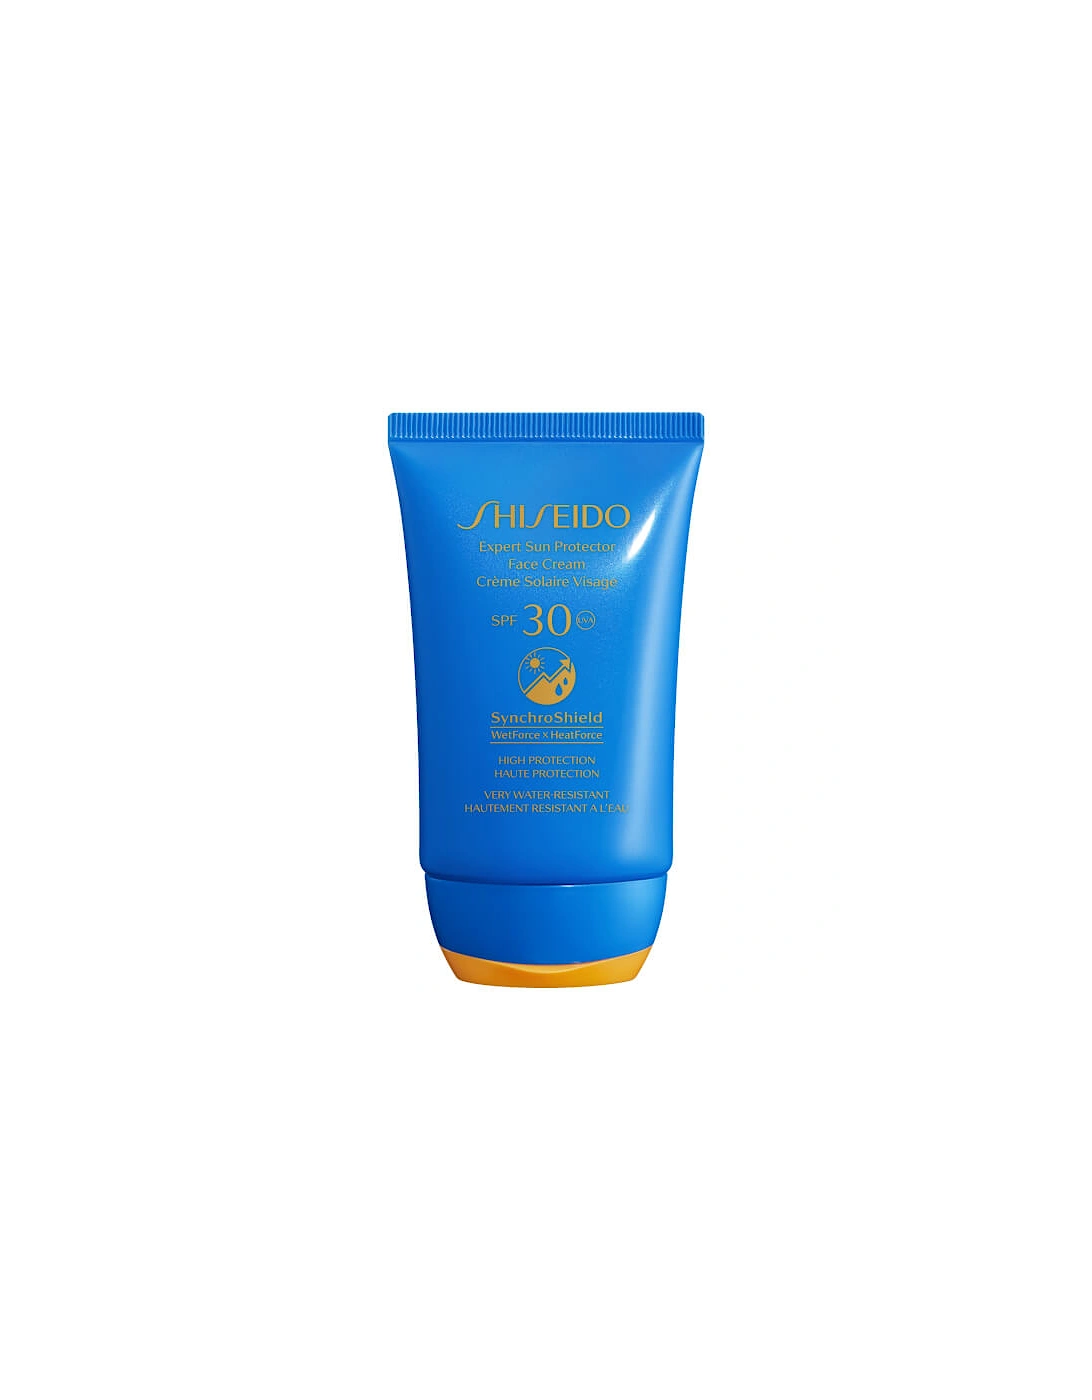 Expert Sun Protector SPF30 Face Cream 50ml, 2 of 1